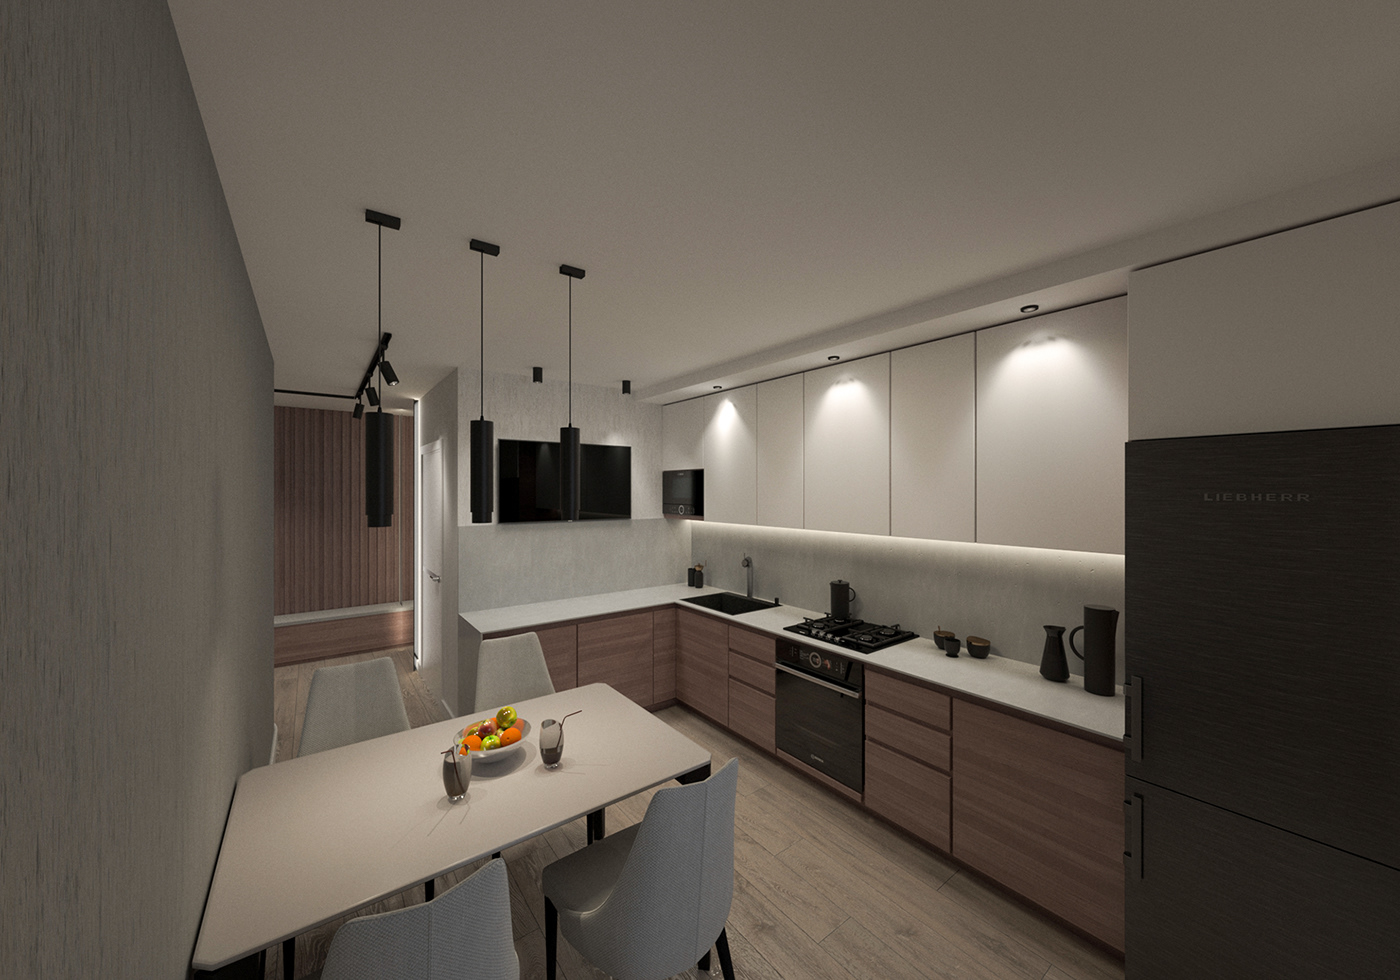 architecture interior design  modern kitchen design architectural design